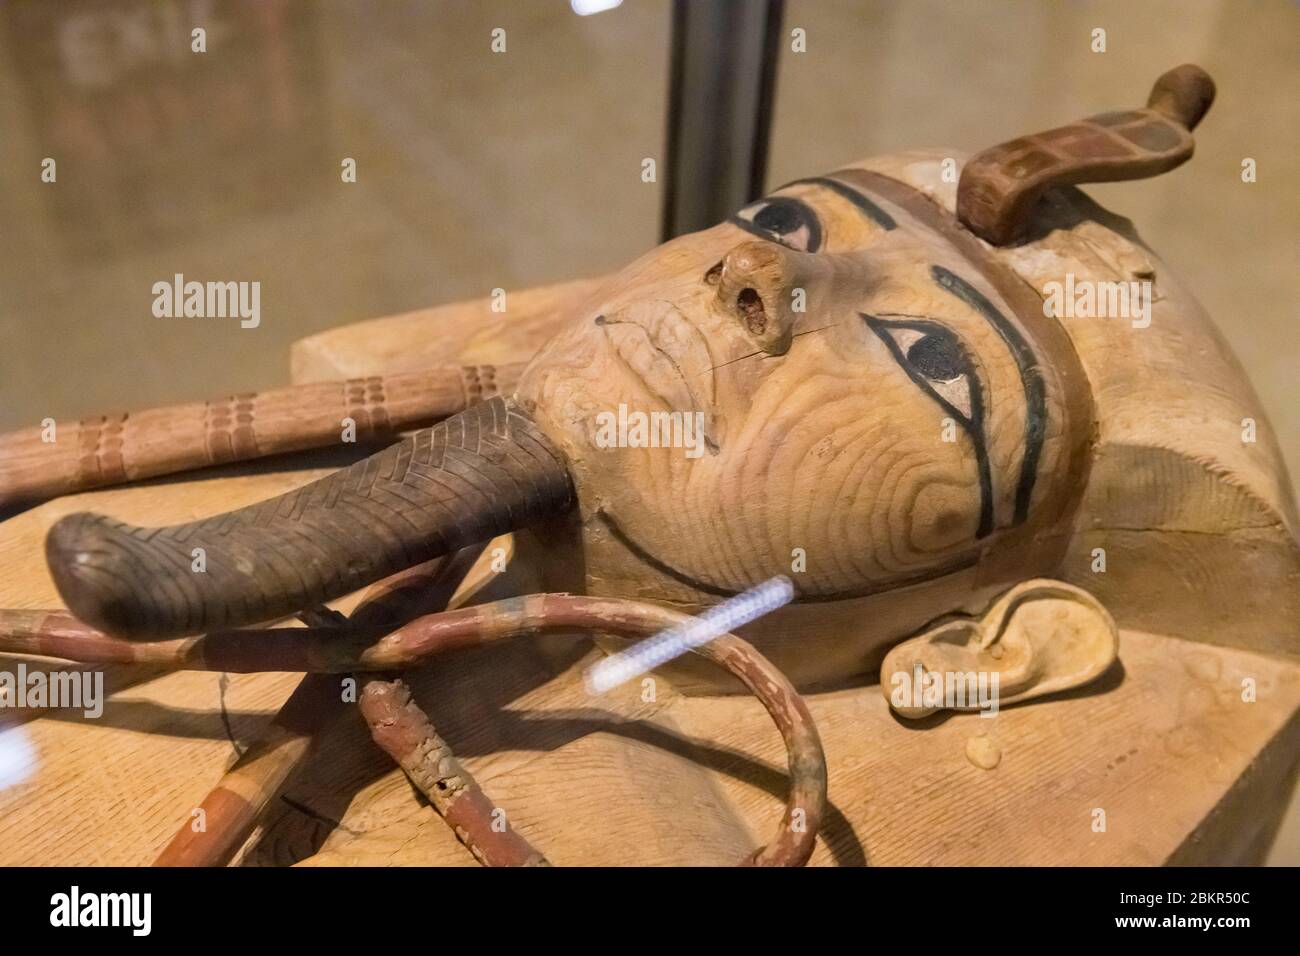 Égypte, le Caire, musée égyptien du Caire, cercueil en bois de cèdre du pharaon Ramsès II Banque D'Images